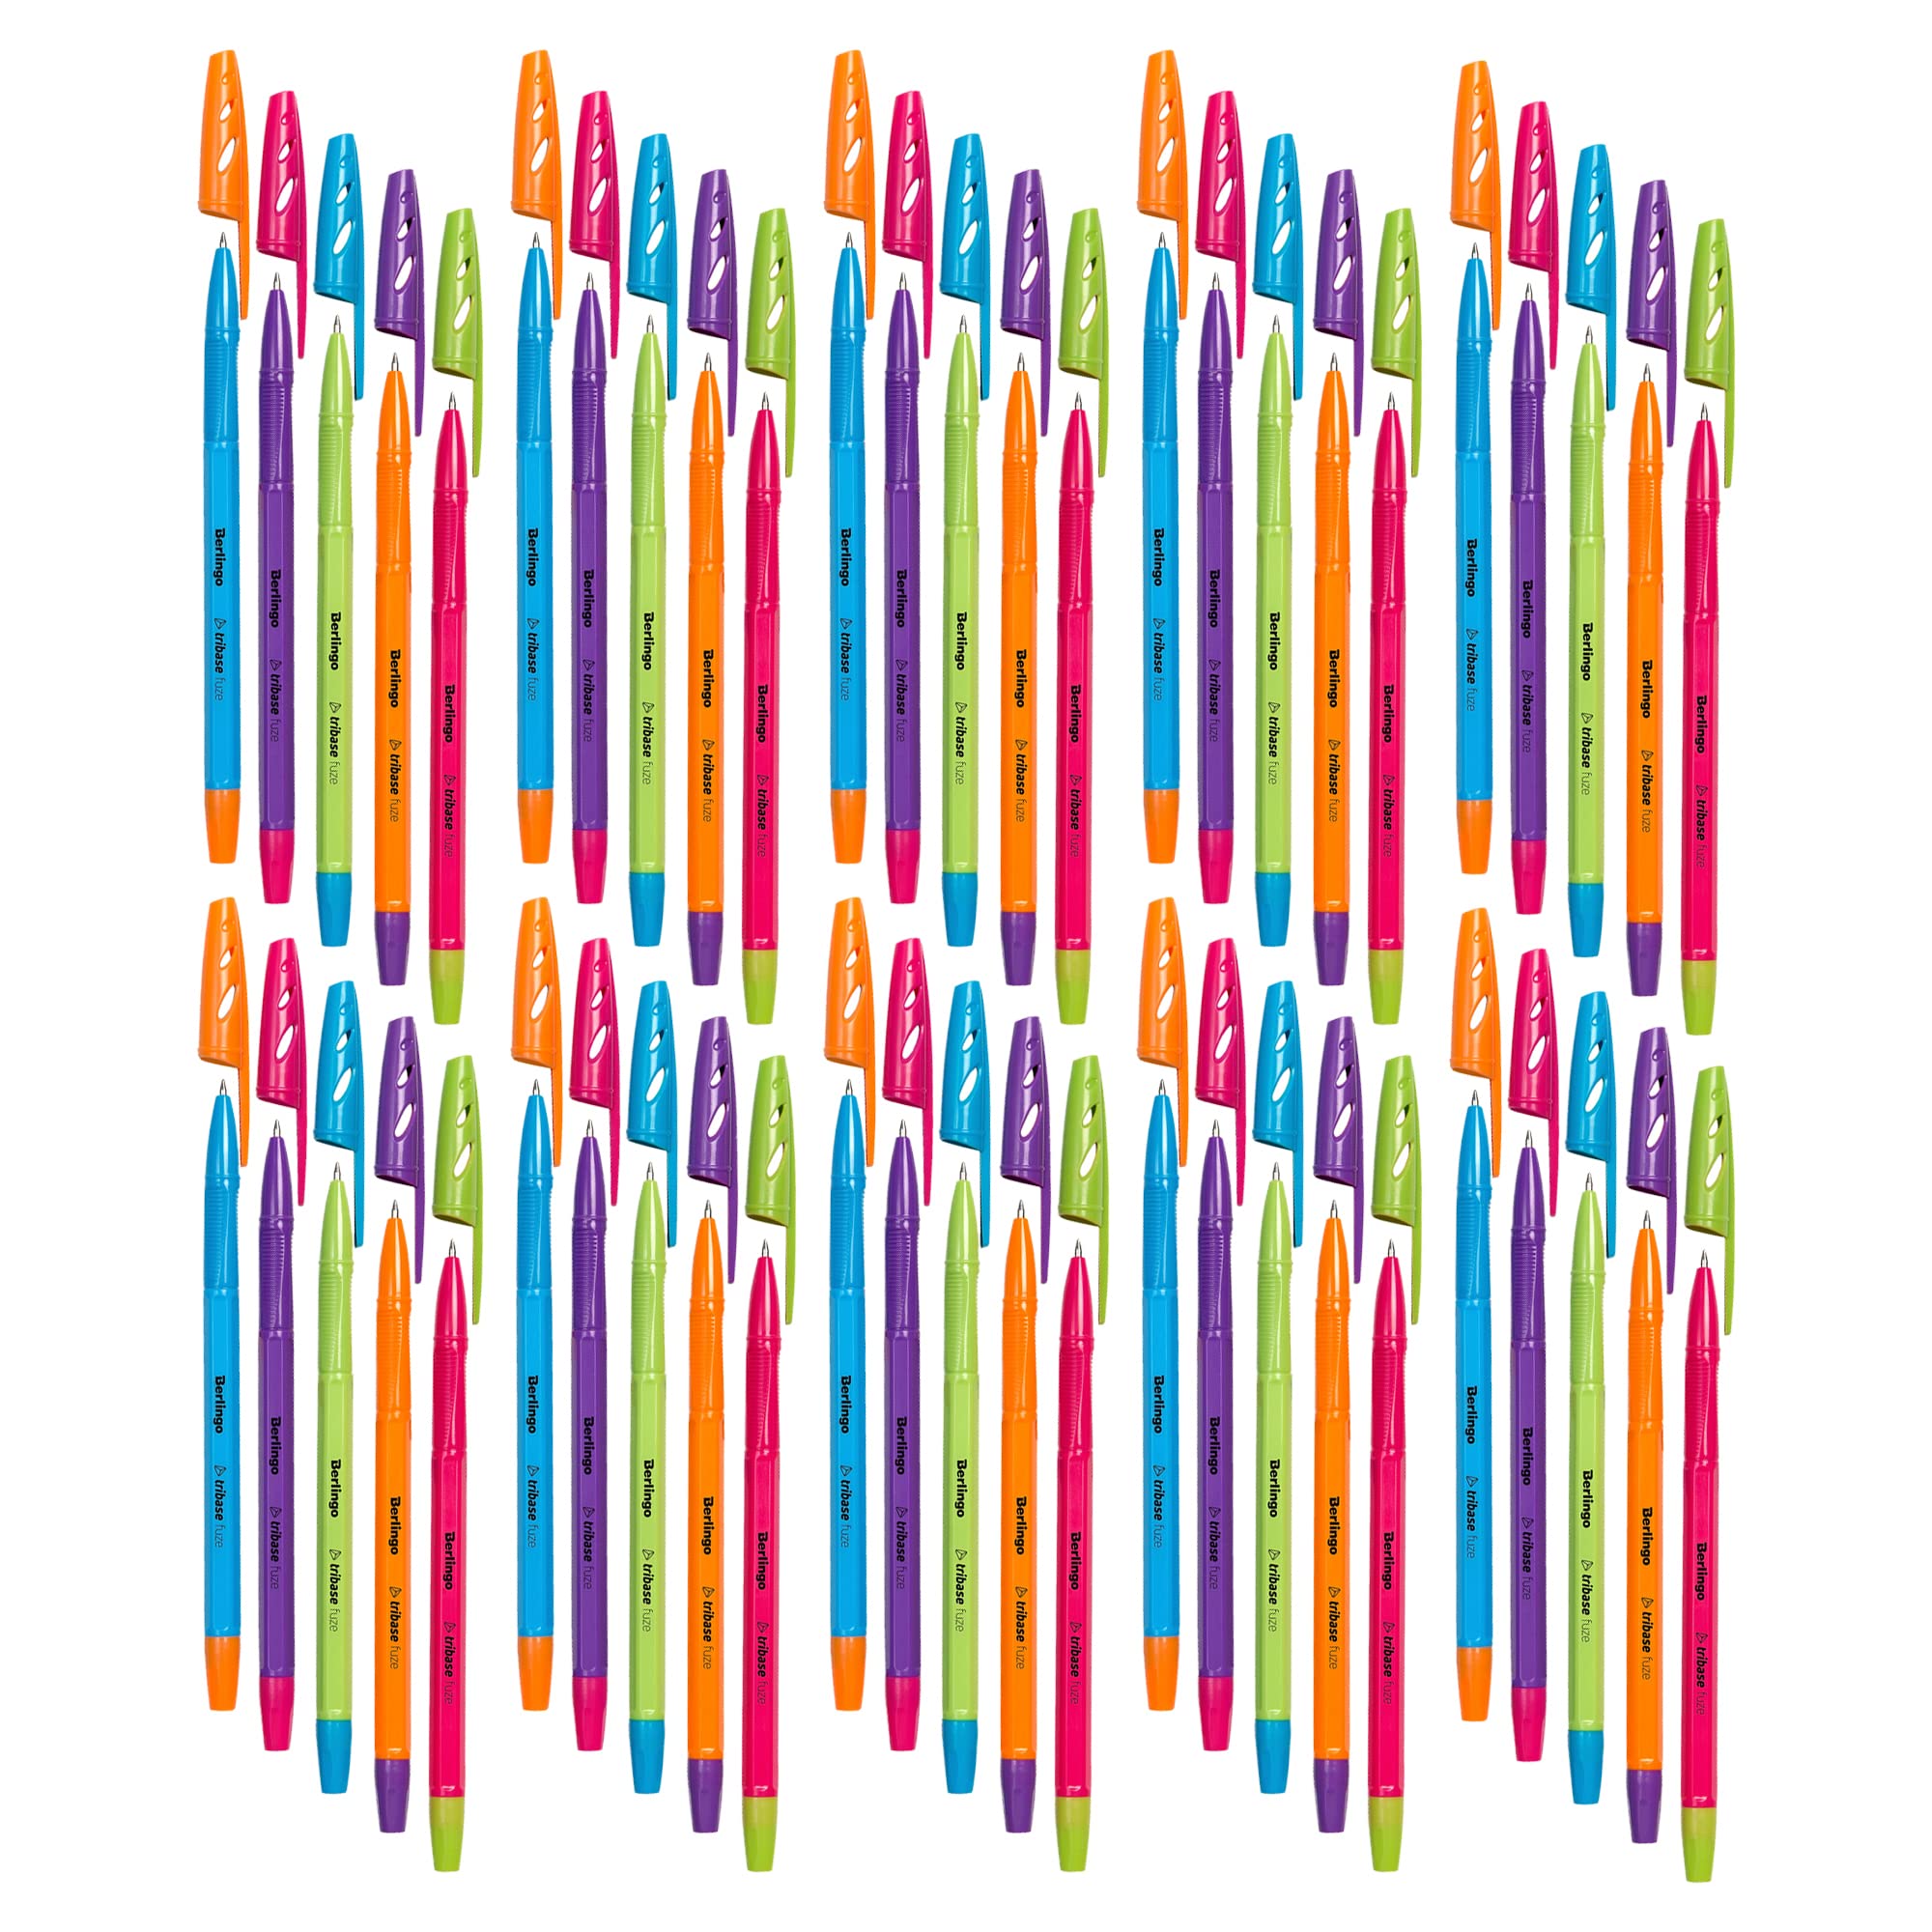 Berlingo Kugelschreiber Set, 50 Stück, mit Kappe, Blau, 0,7 mm Strichbreite, für das Büro, das Home Office oder die Schule und Uni, Serie Tribase Fuze